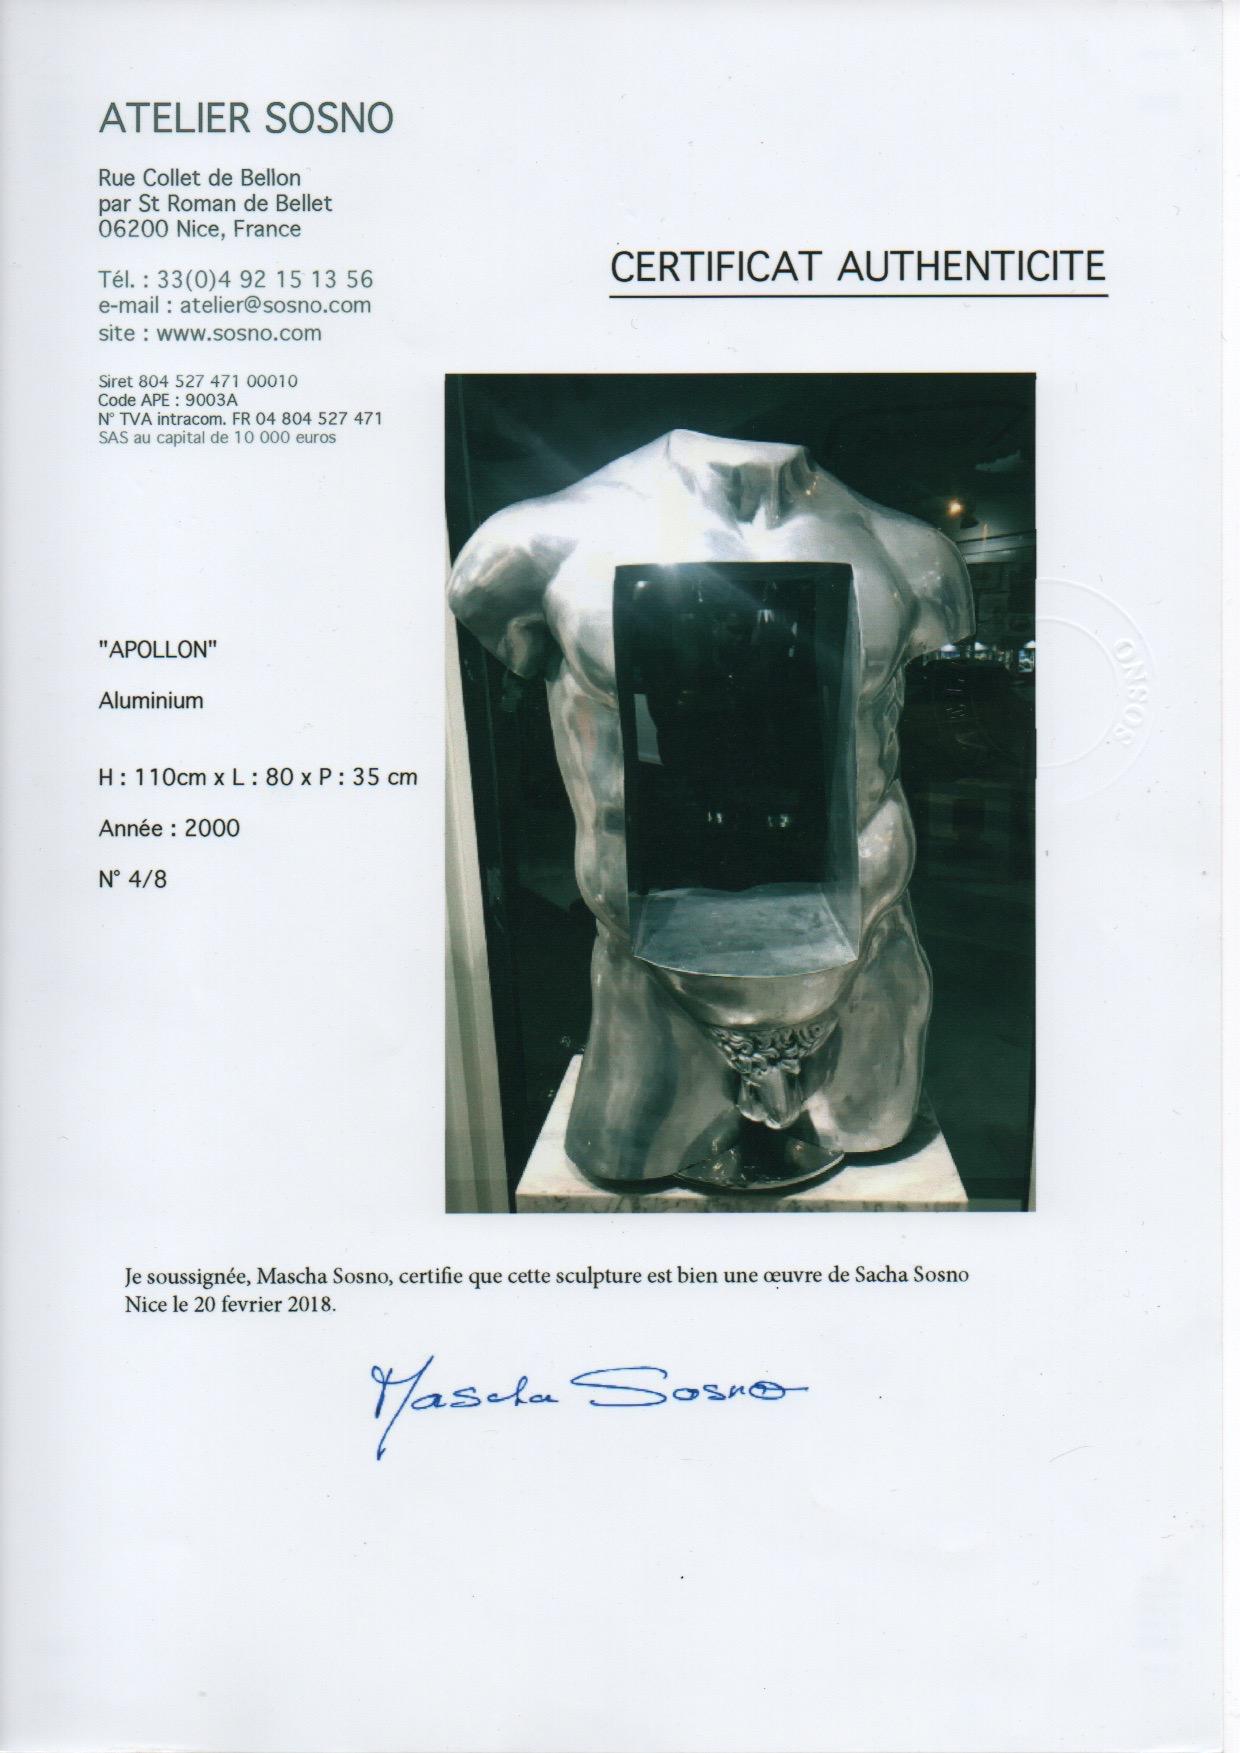 Apollon
aluminium sculpture 
certificate of authenticity 
circa 200
number 4/8
110 x 80 x 35
25,000 euros